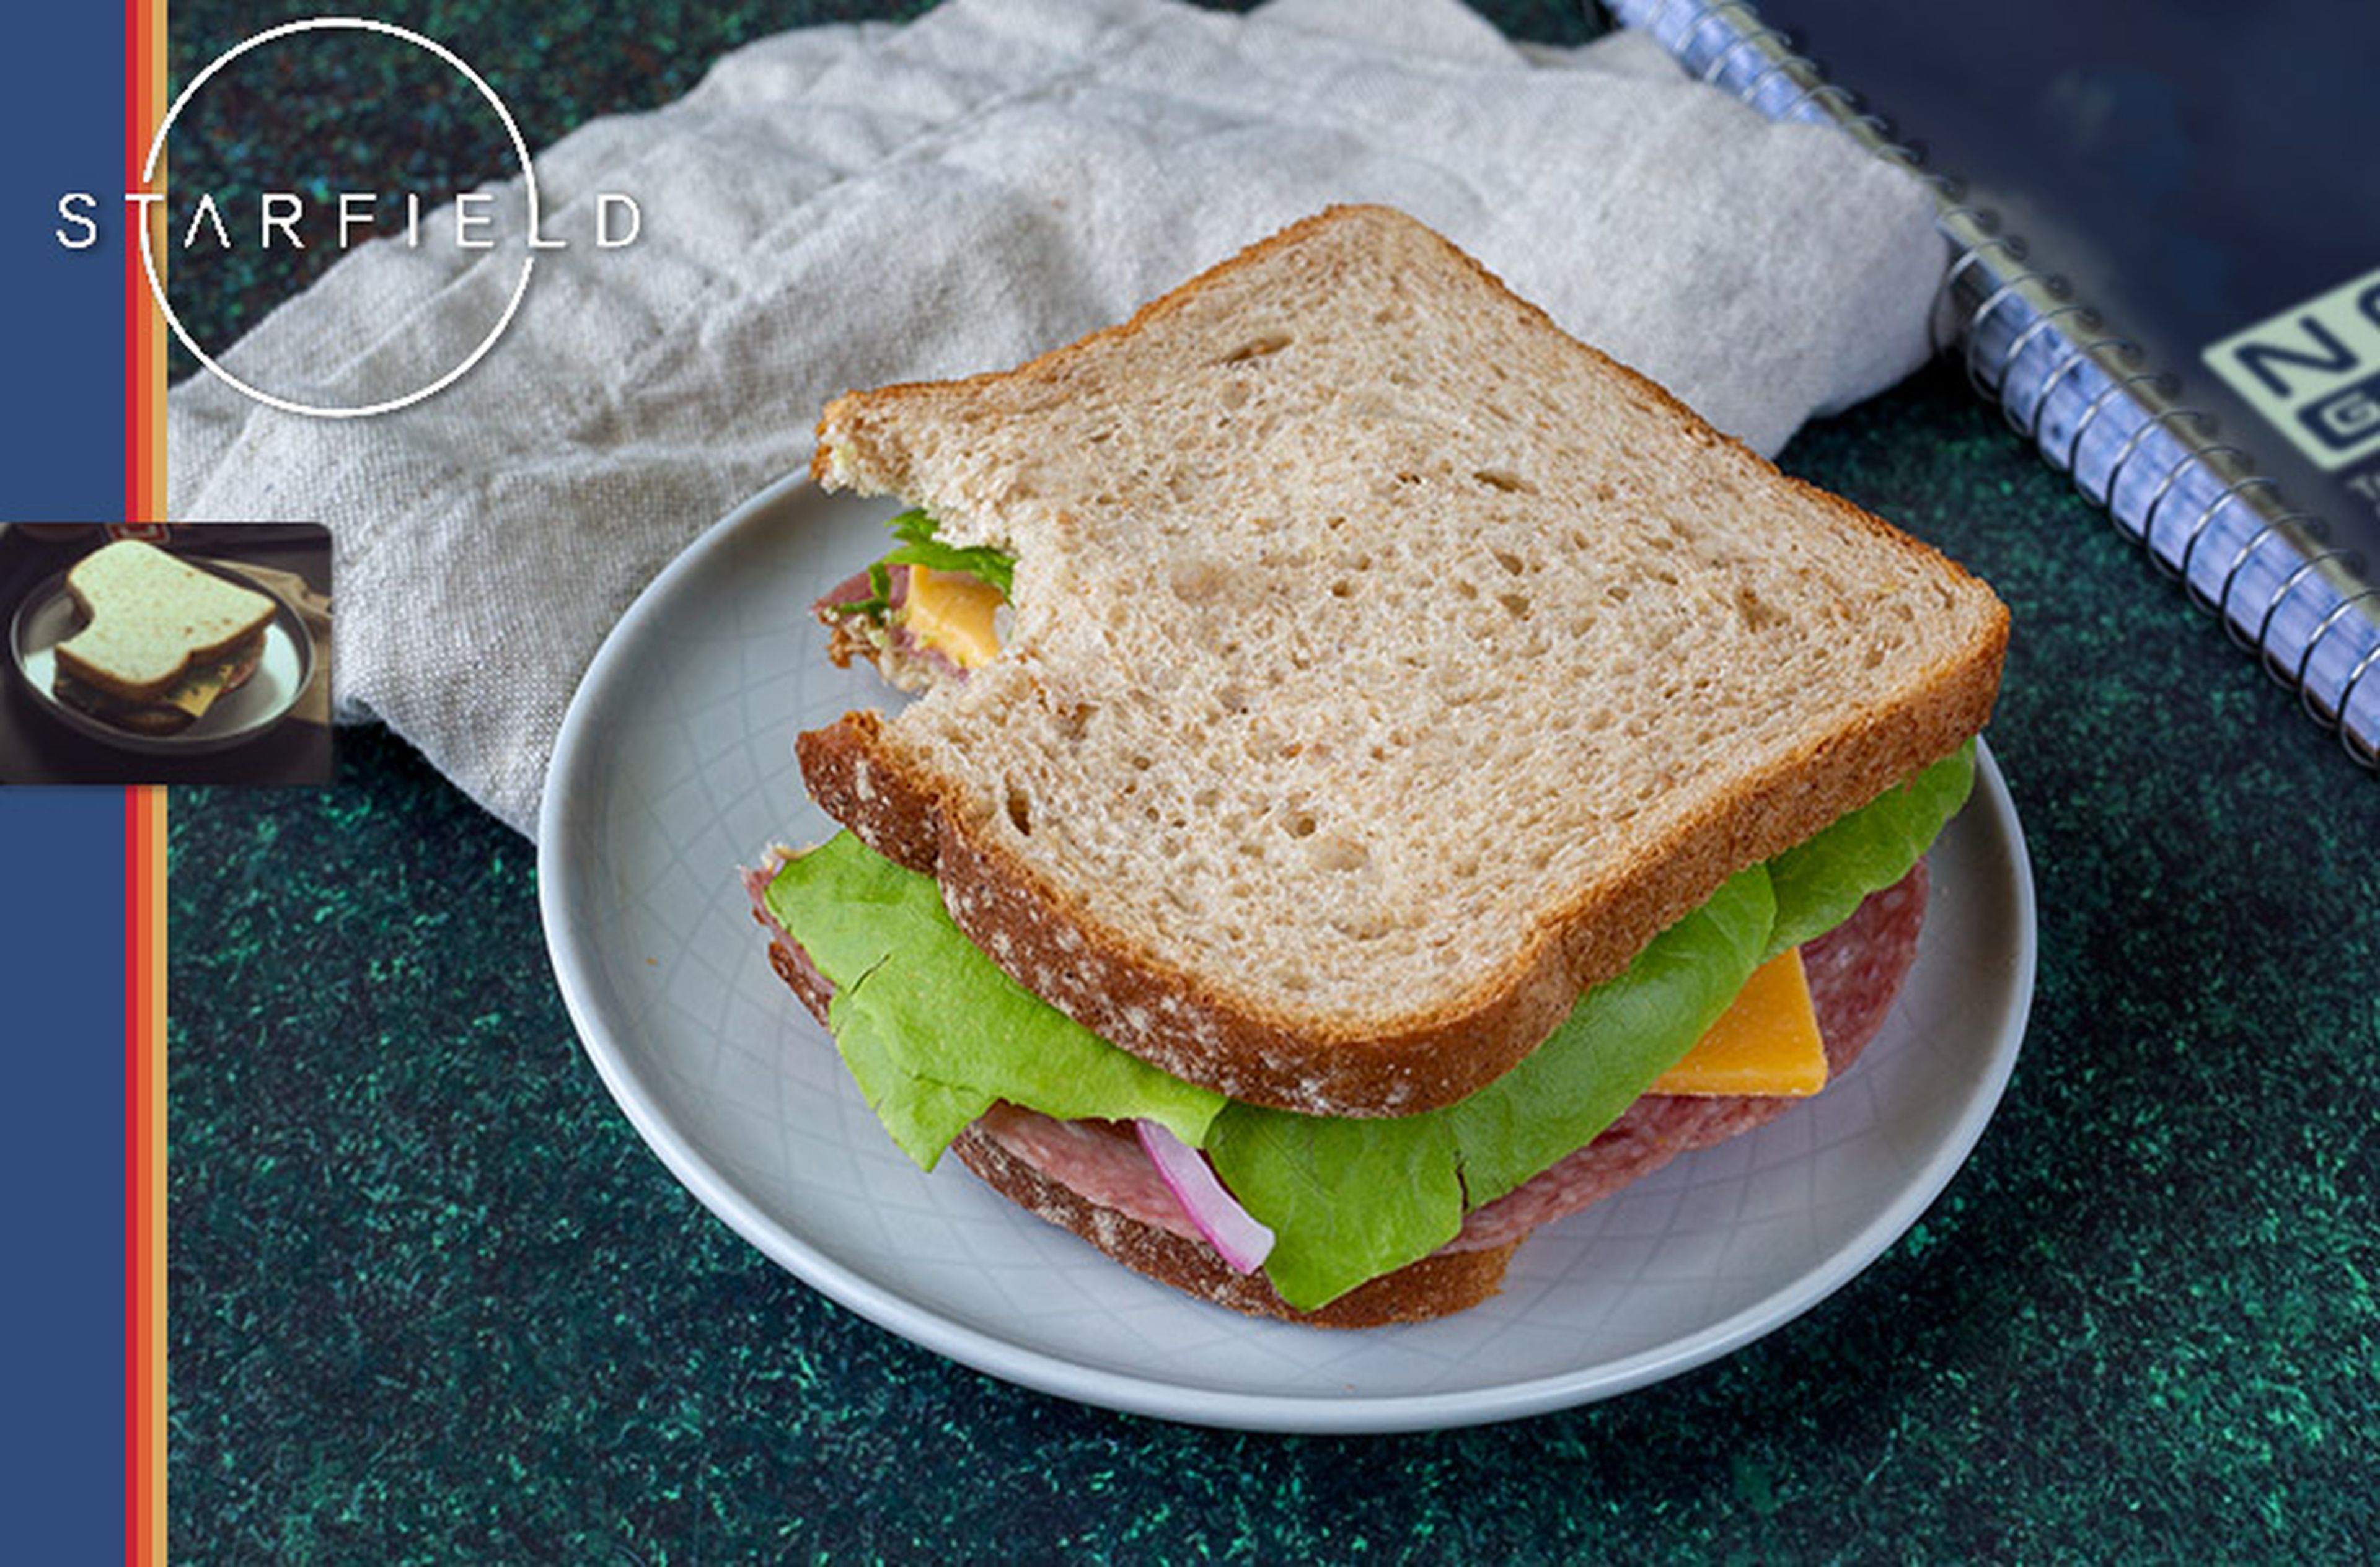 Starfield Sandwich